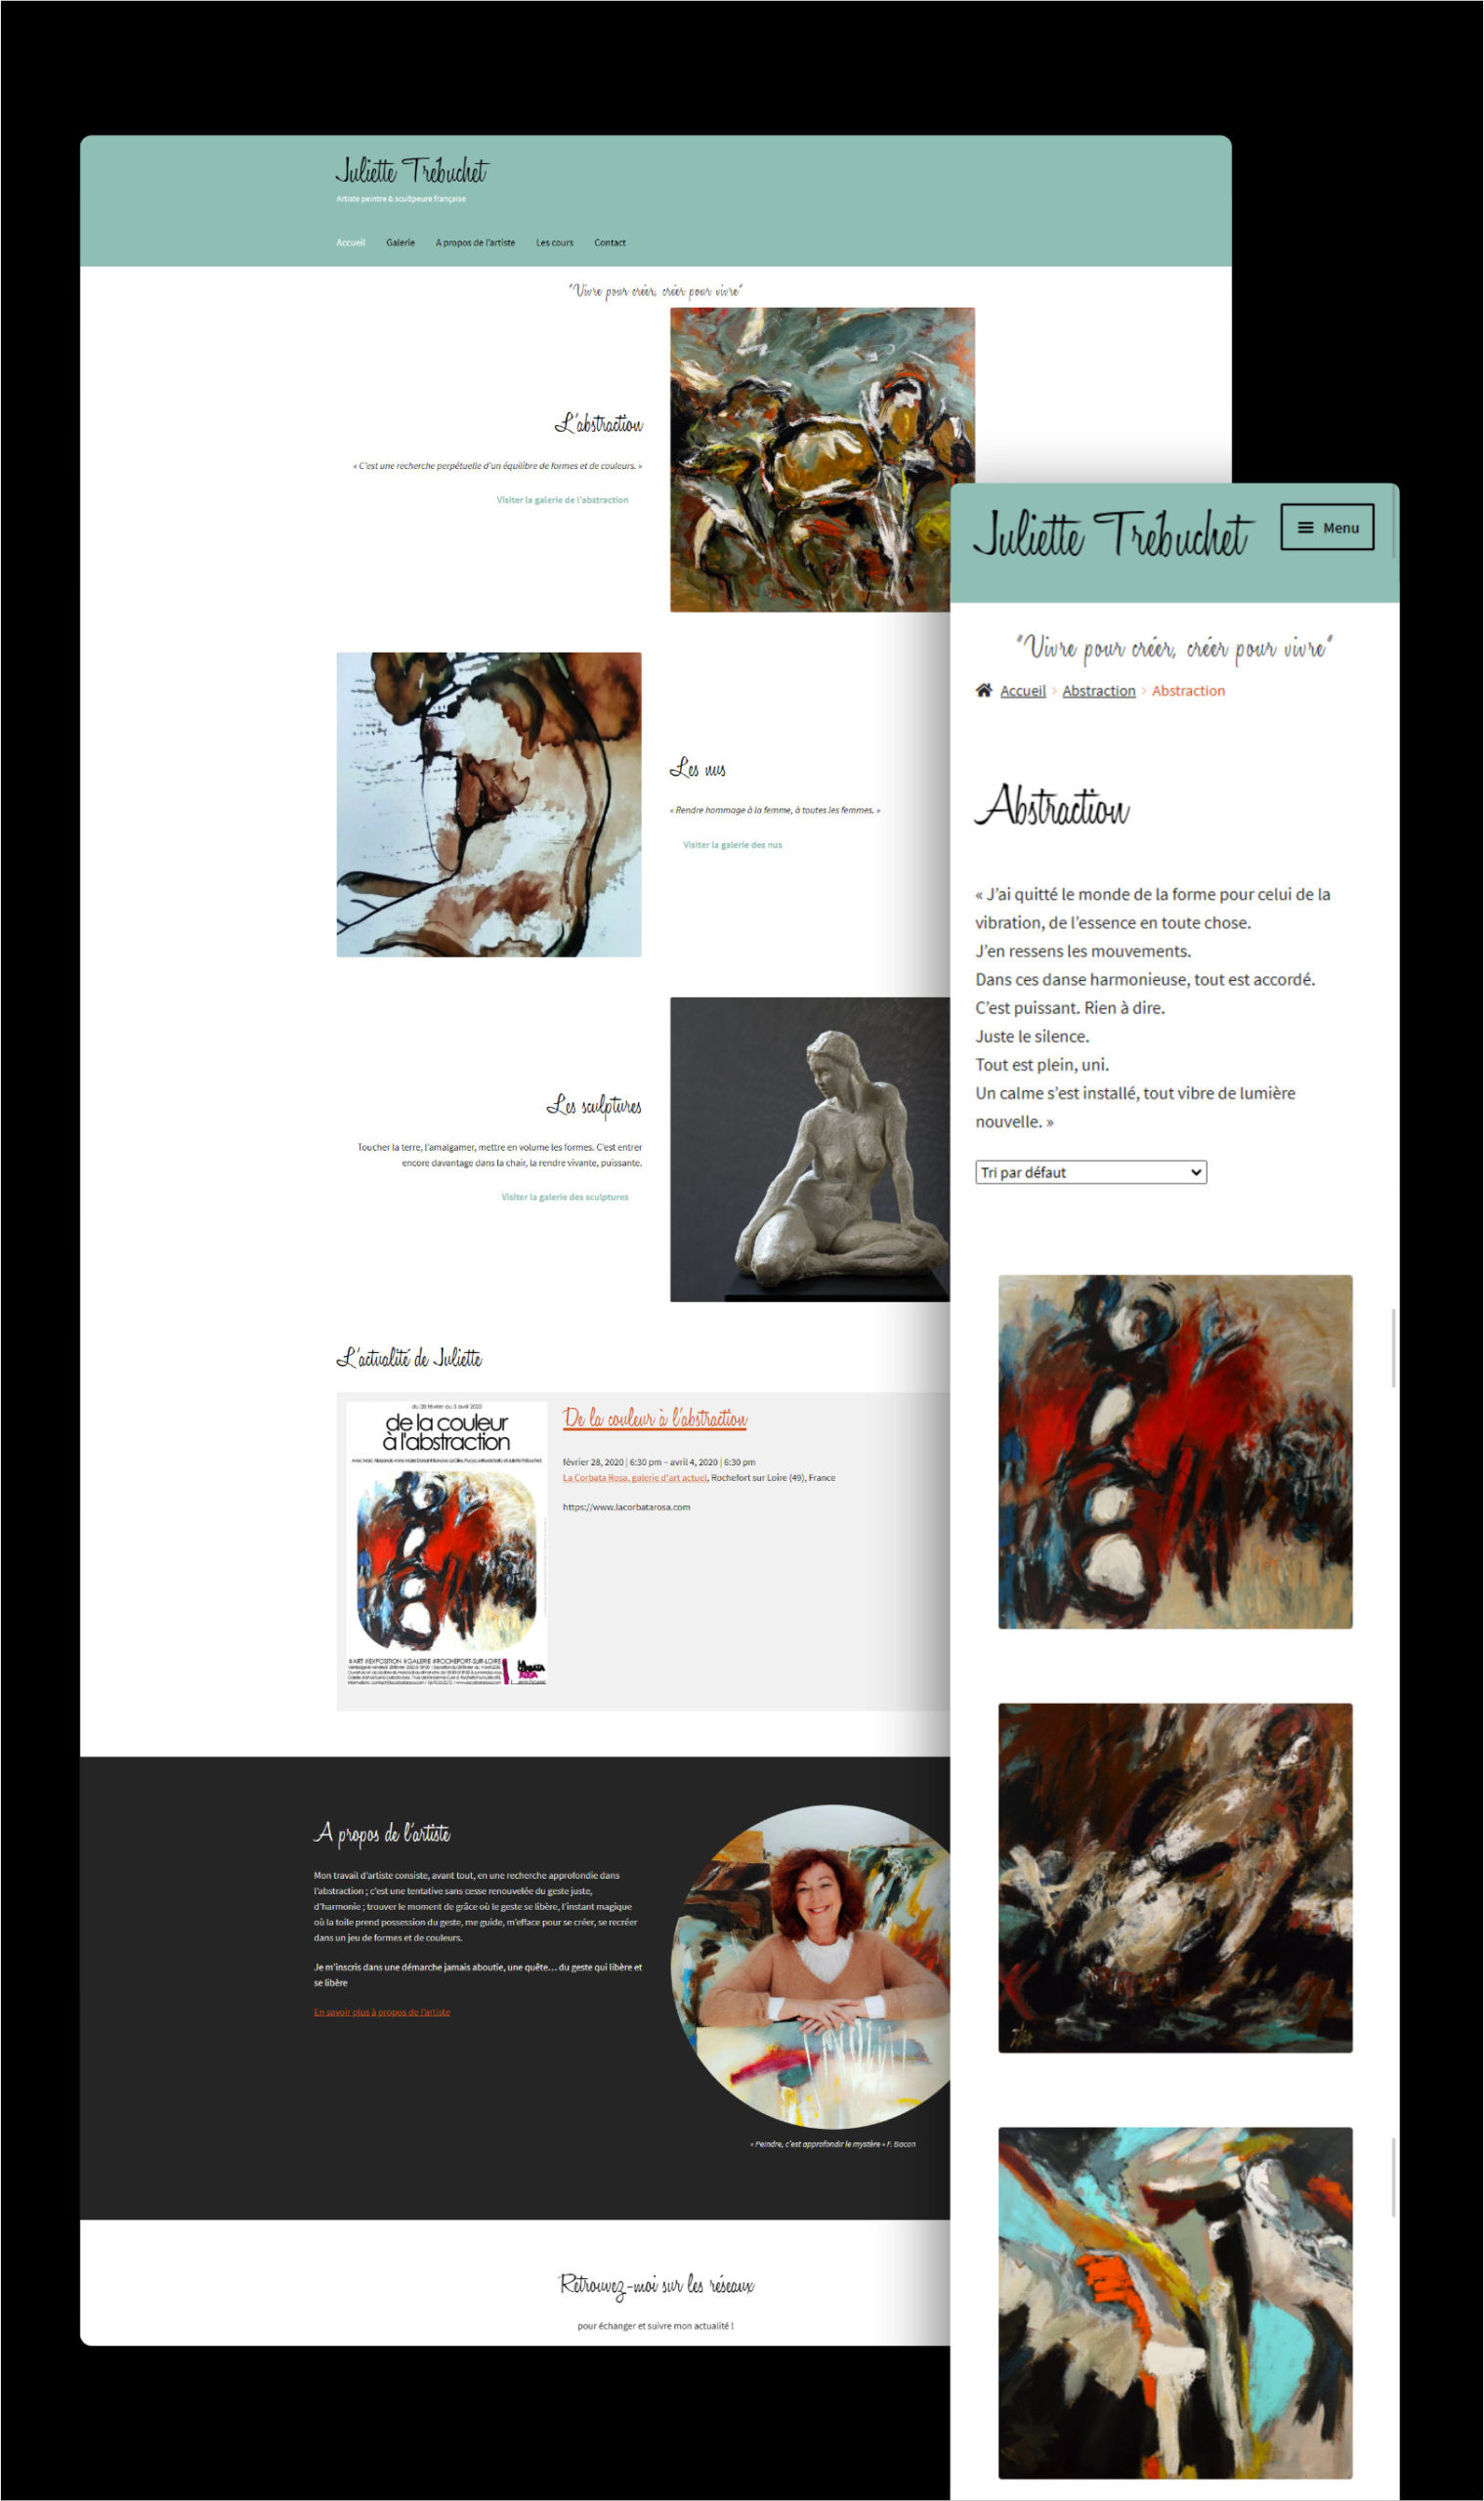 You are currently viewing Site web Juliette Trébuchet, artiste